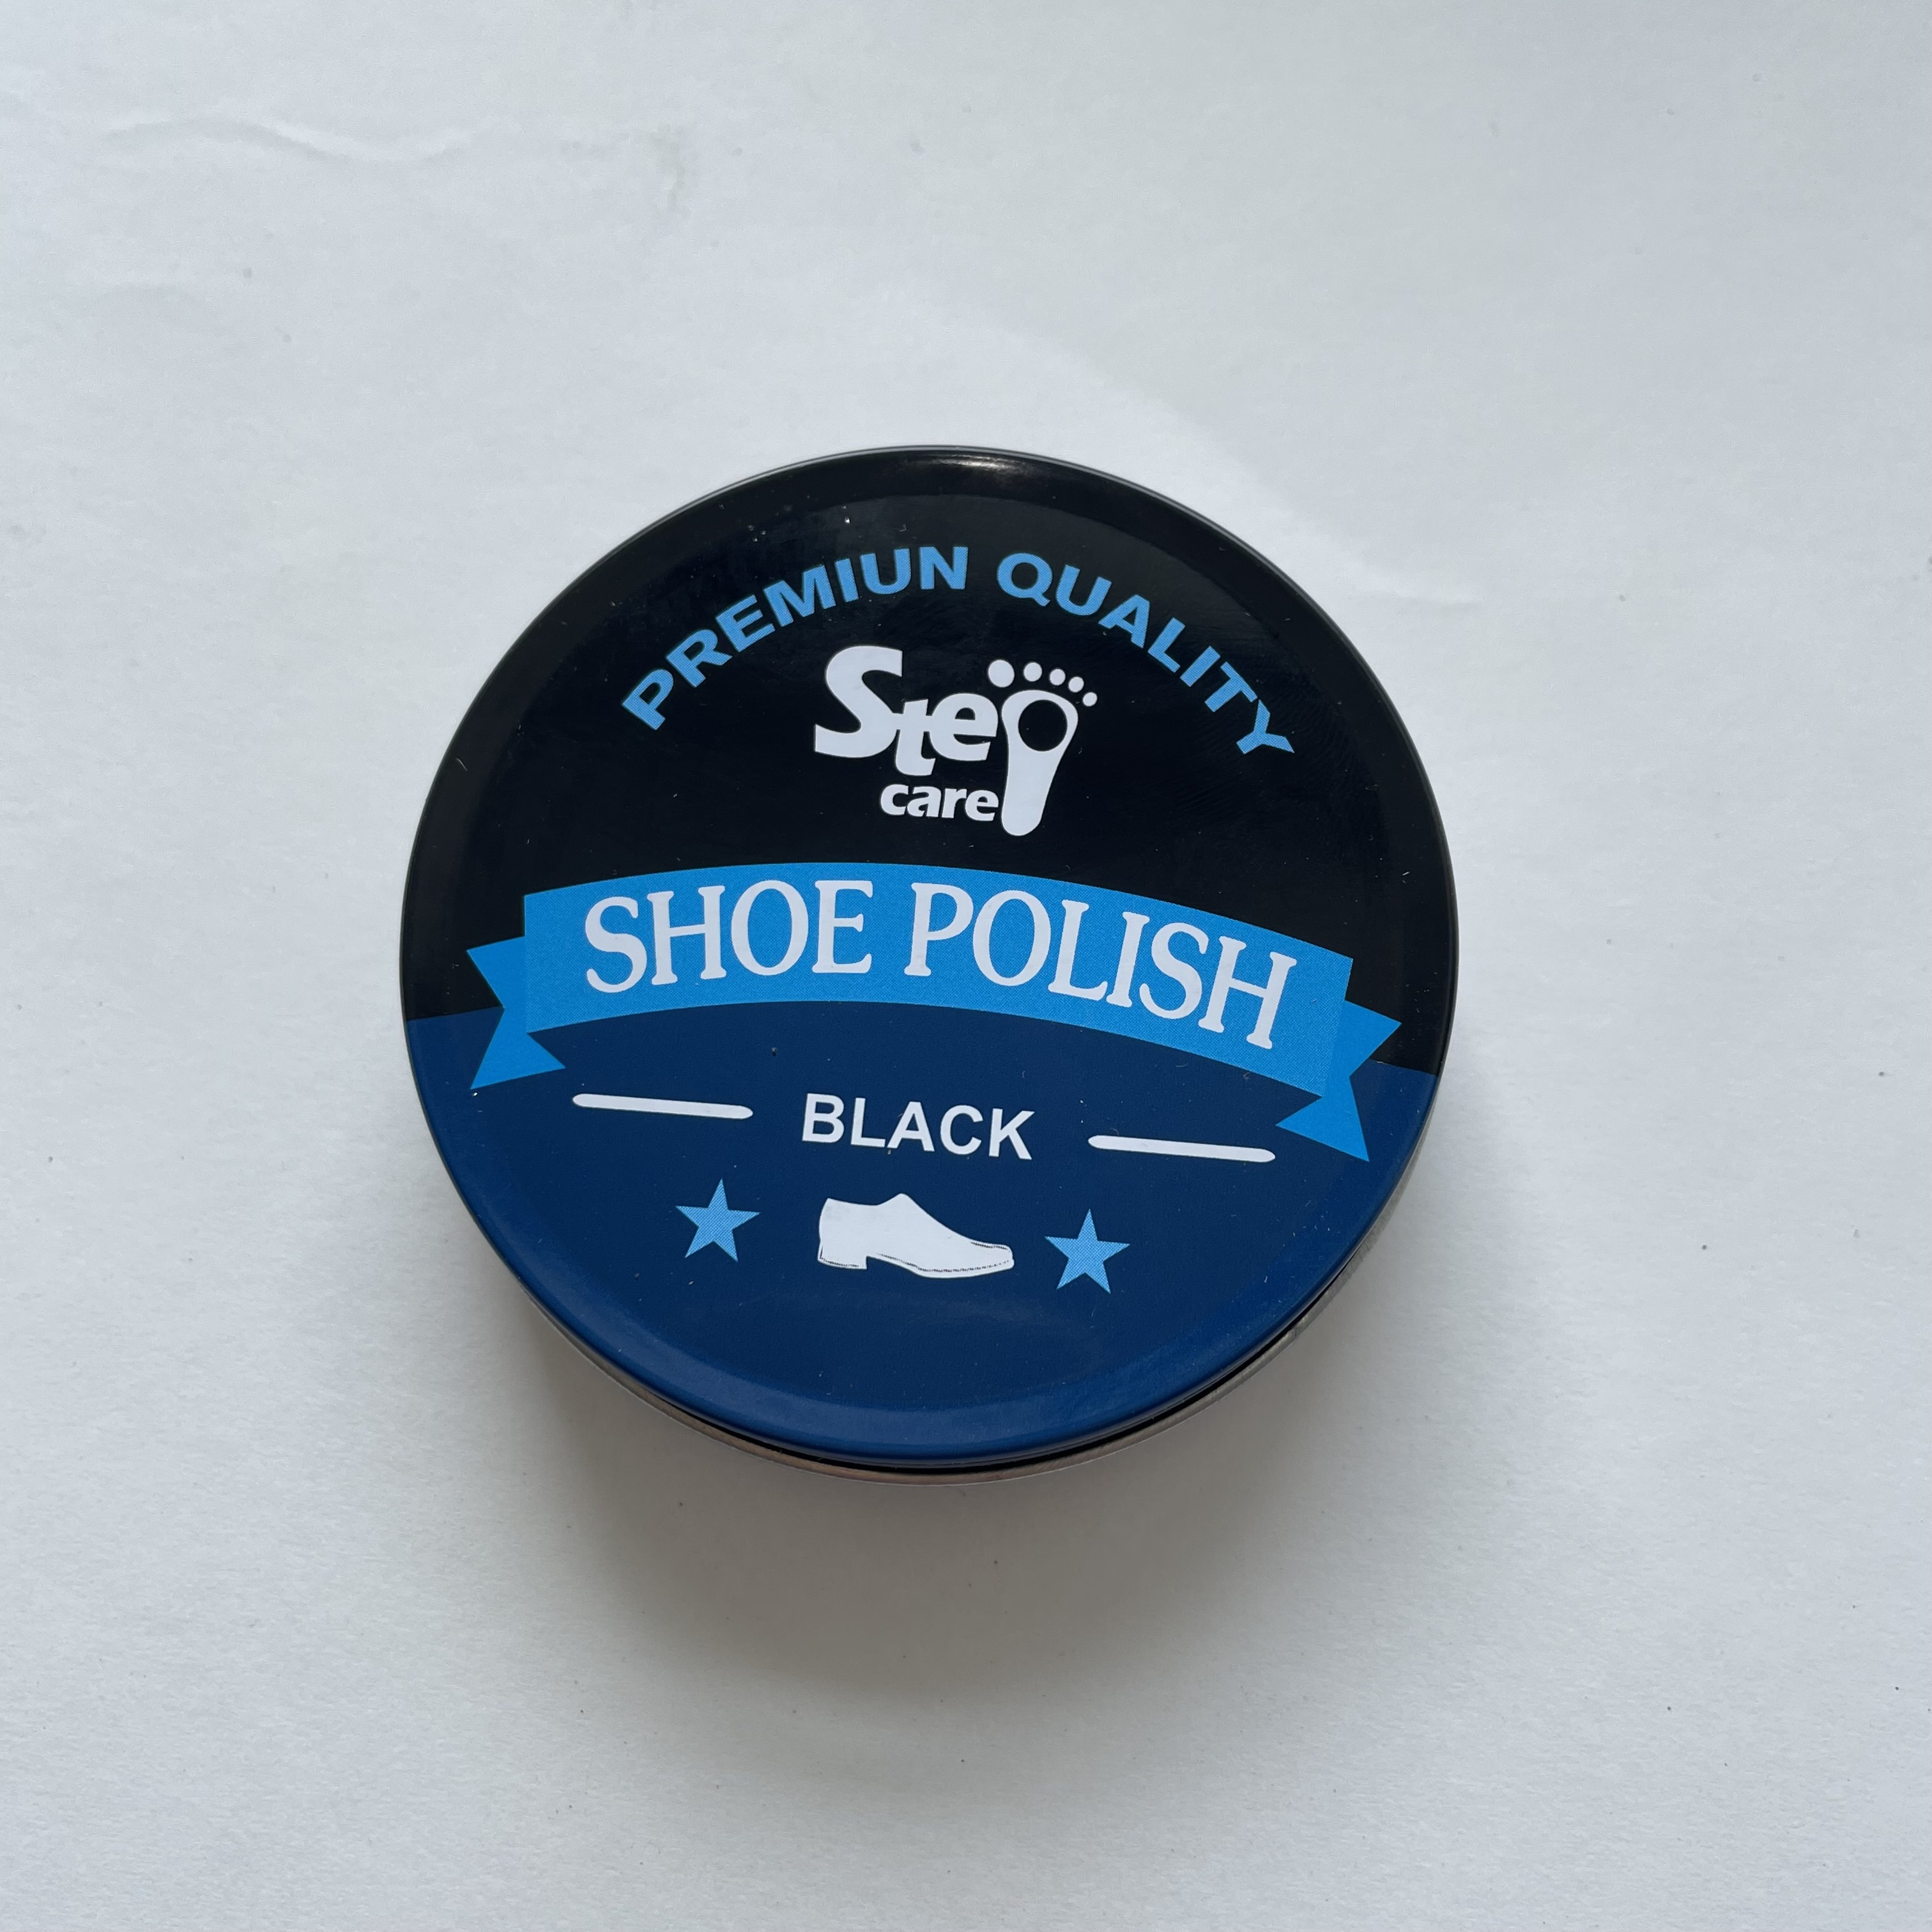 Buy Wholesale wholesale shoe shine sponge, Affordable Shoe Shine